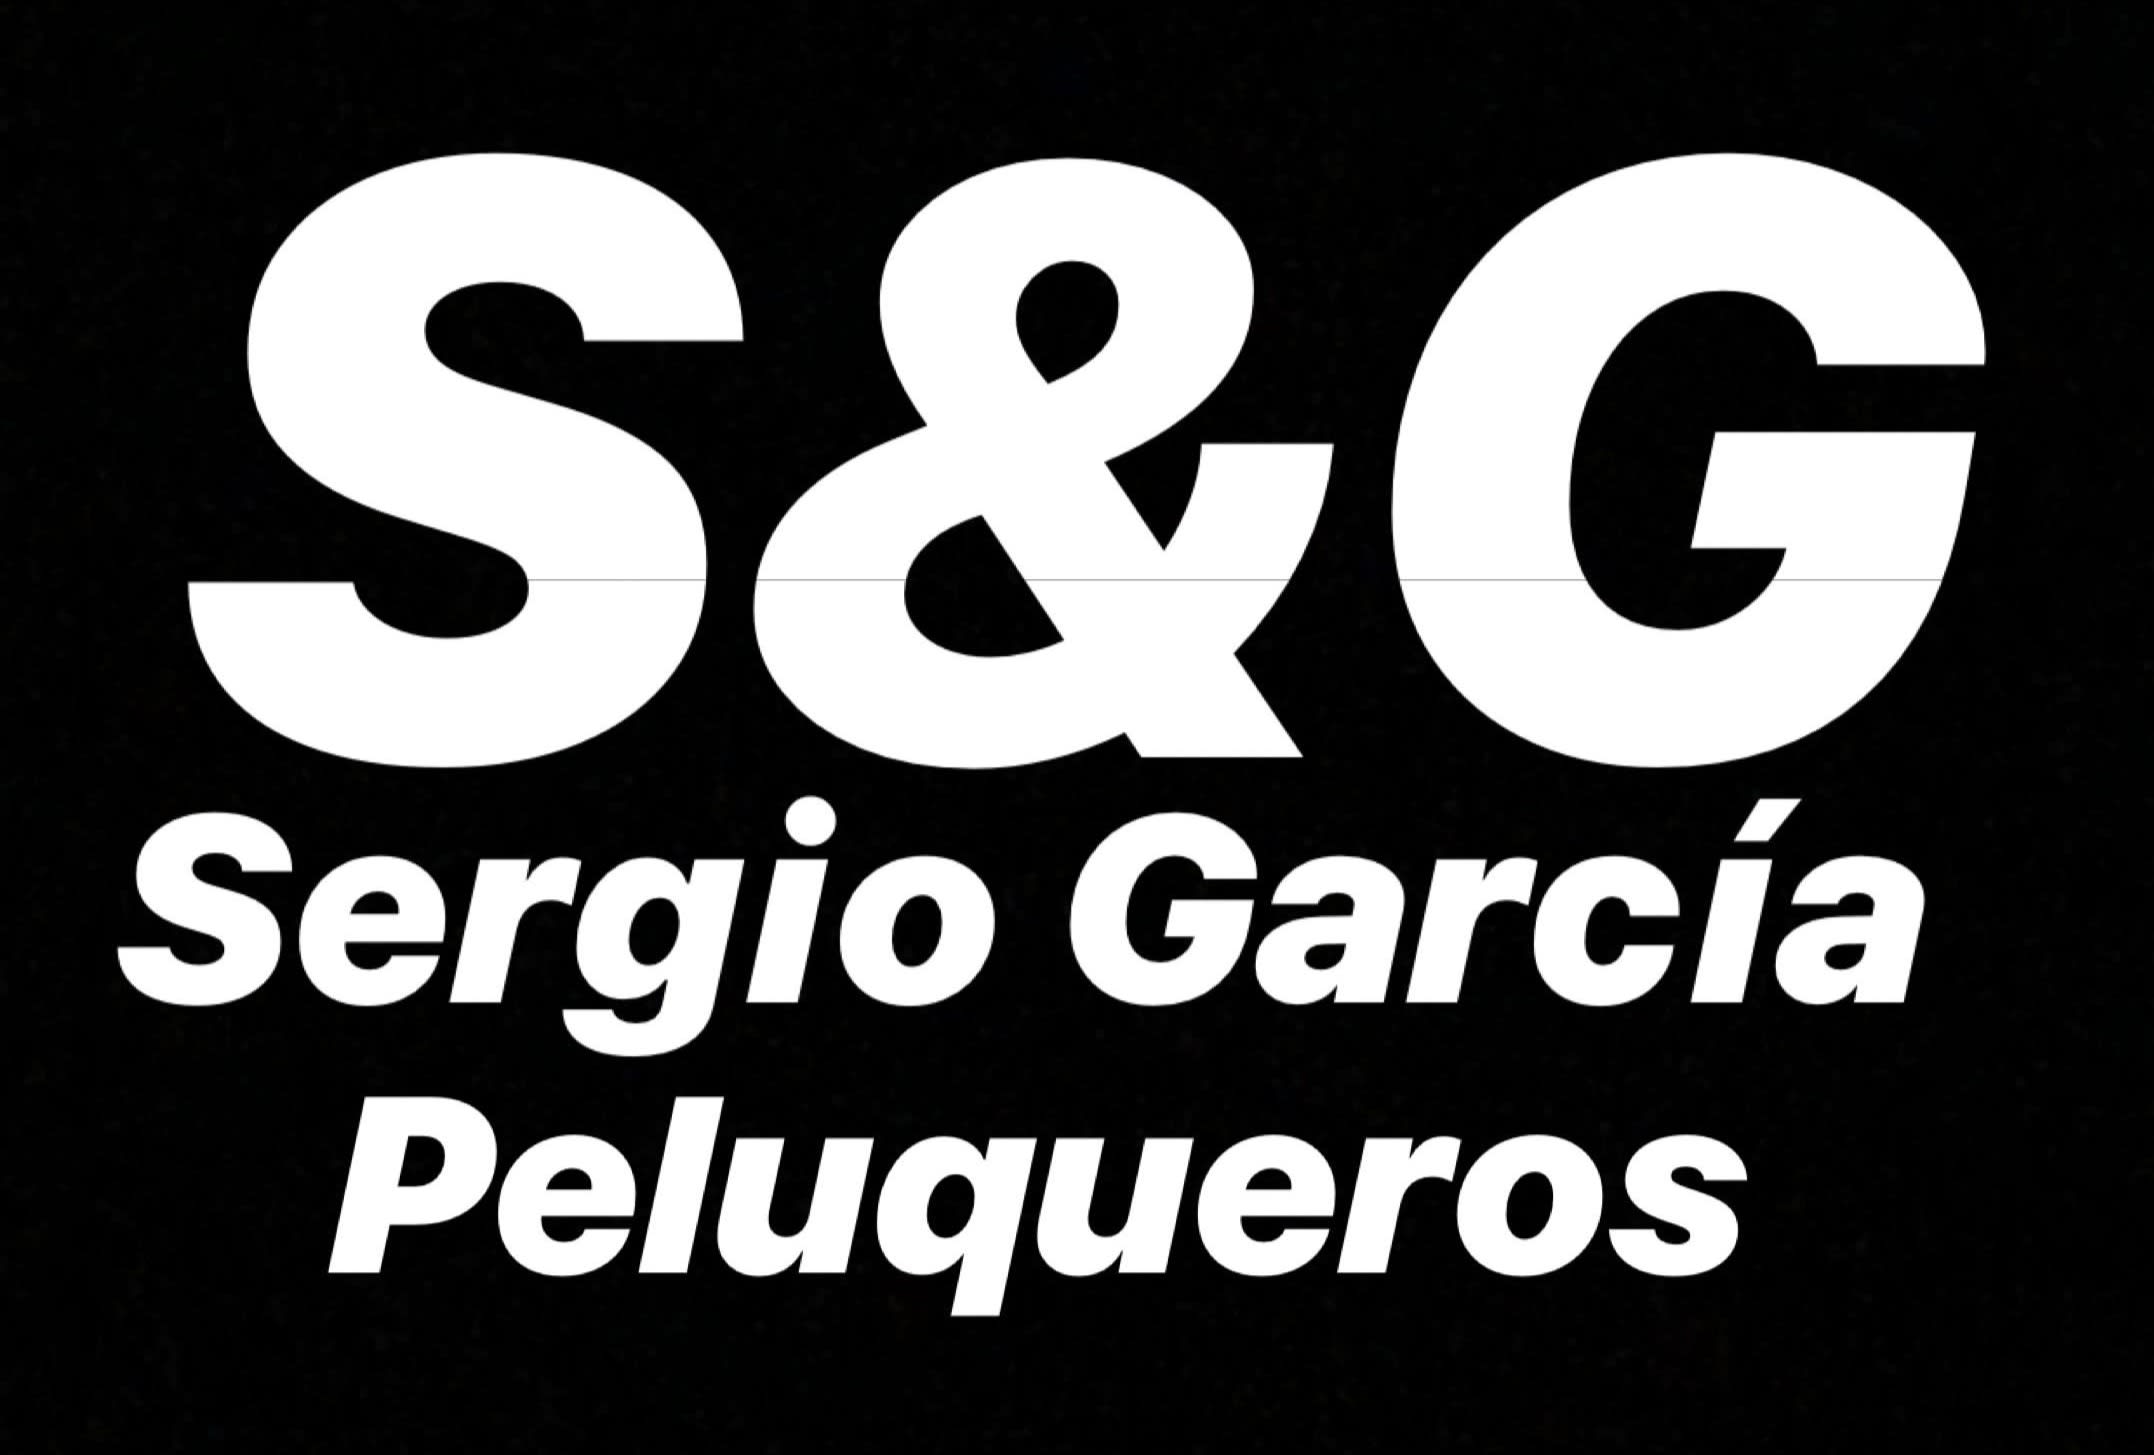 Sergio García peluqueros